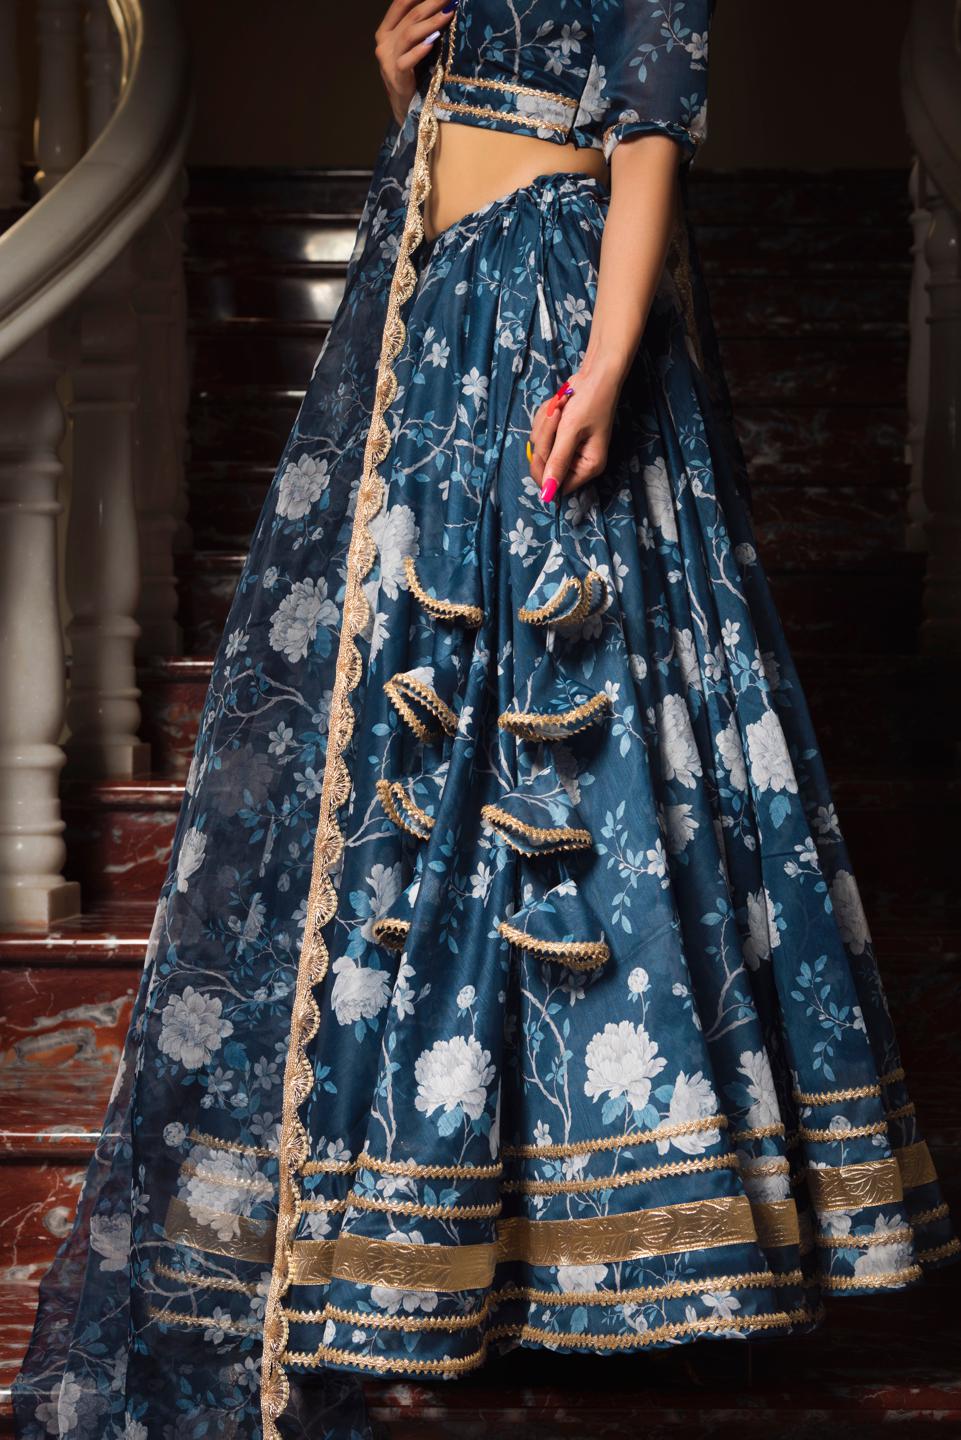 bluebell-modal-chanderi-lehenga-set-11423003BL, Women Indian Ethnic Clothing, Modal Chanderi Lehenga Choli